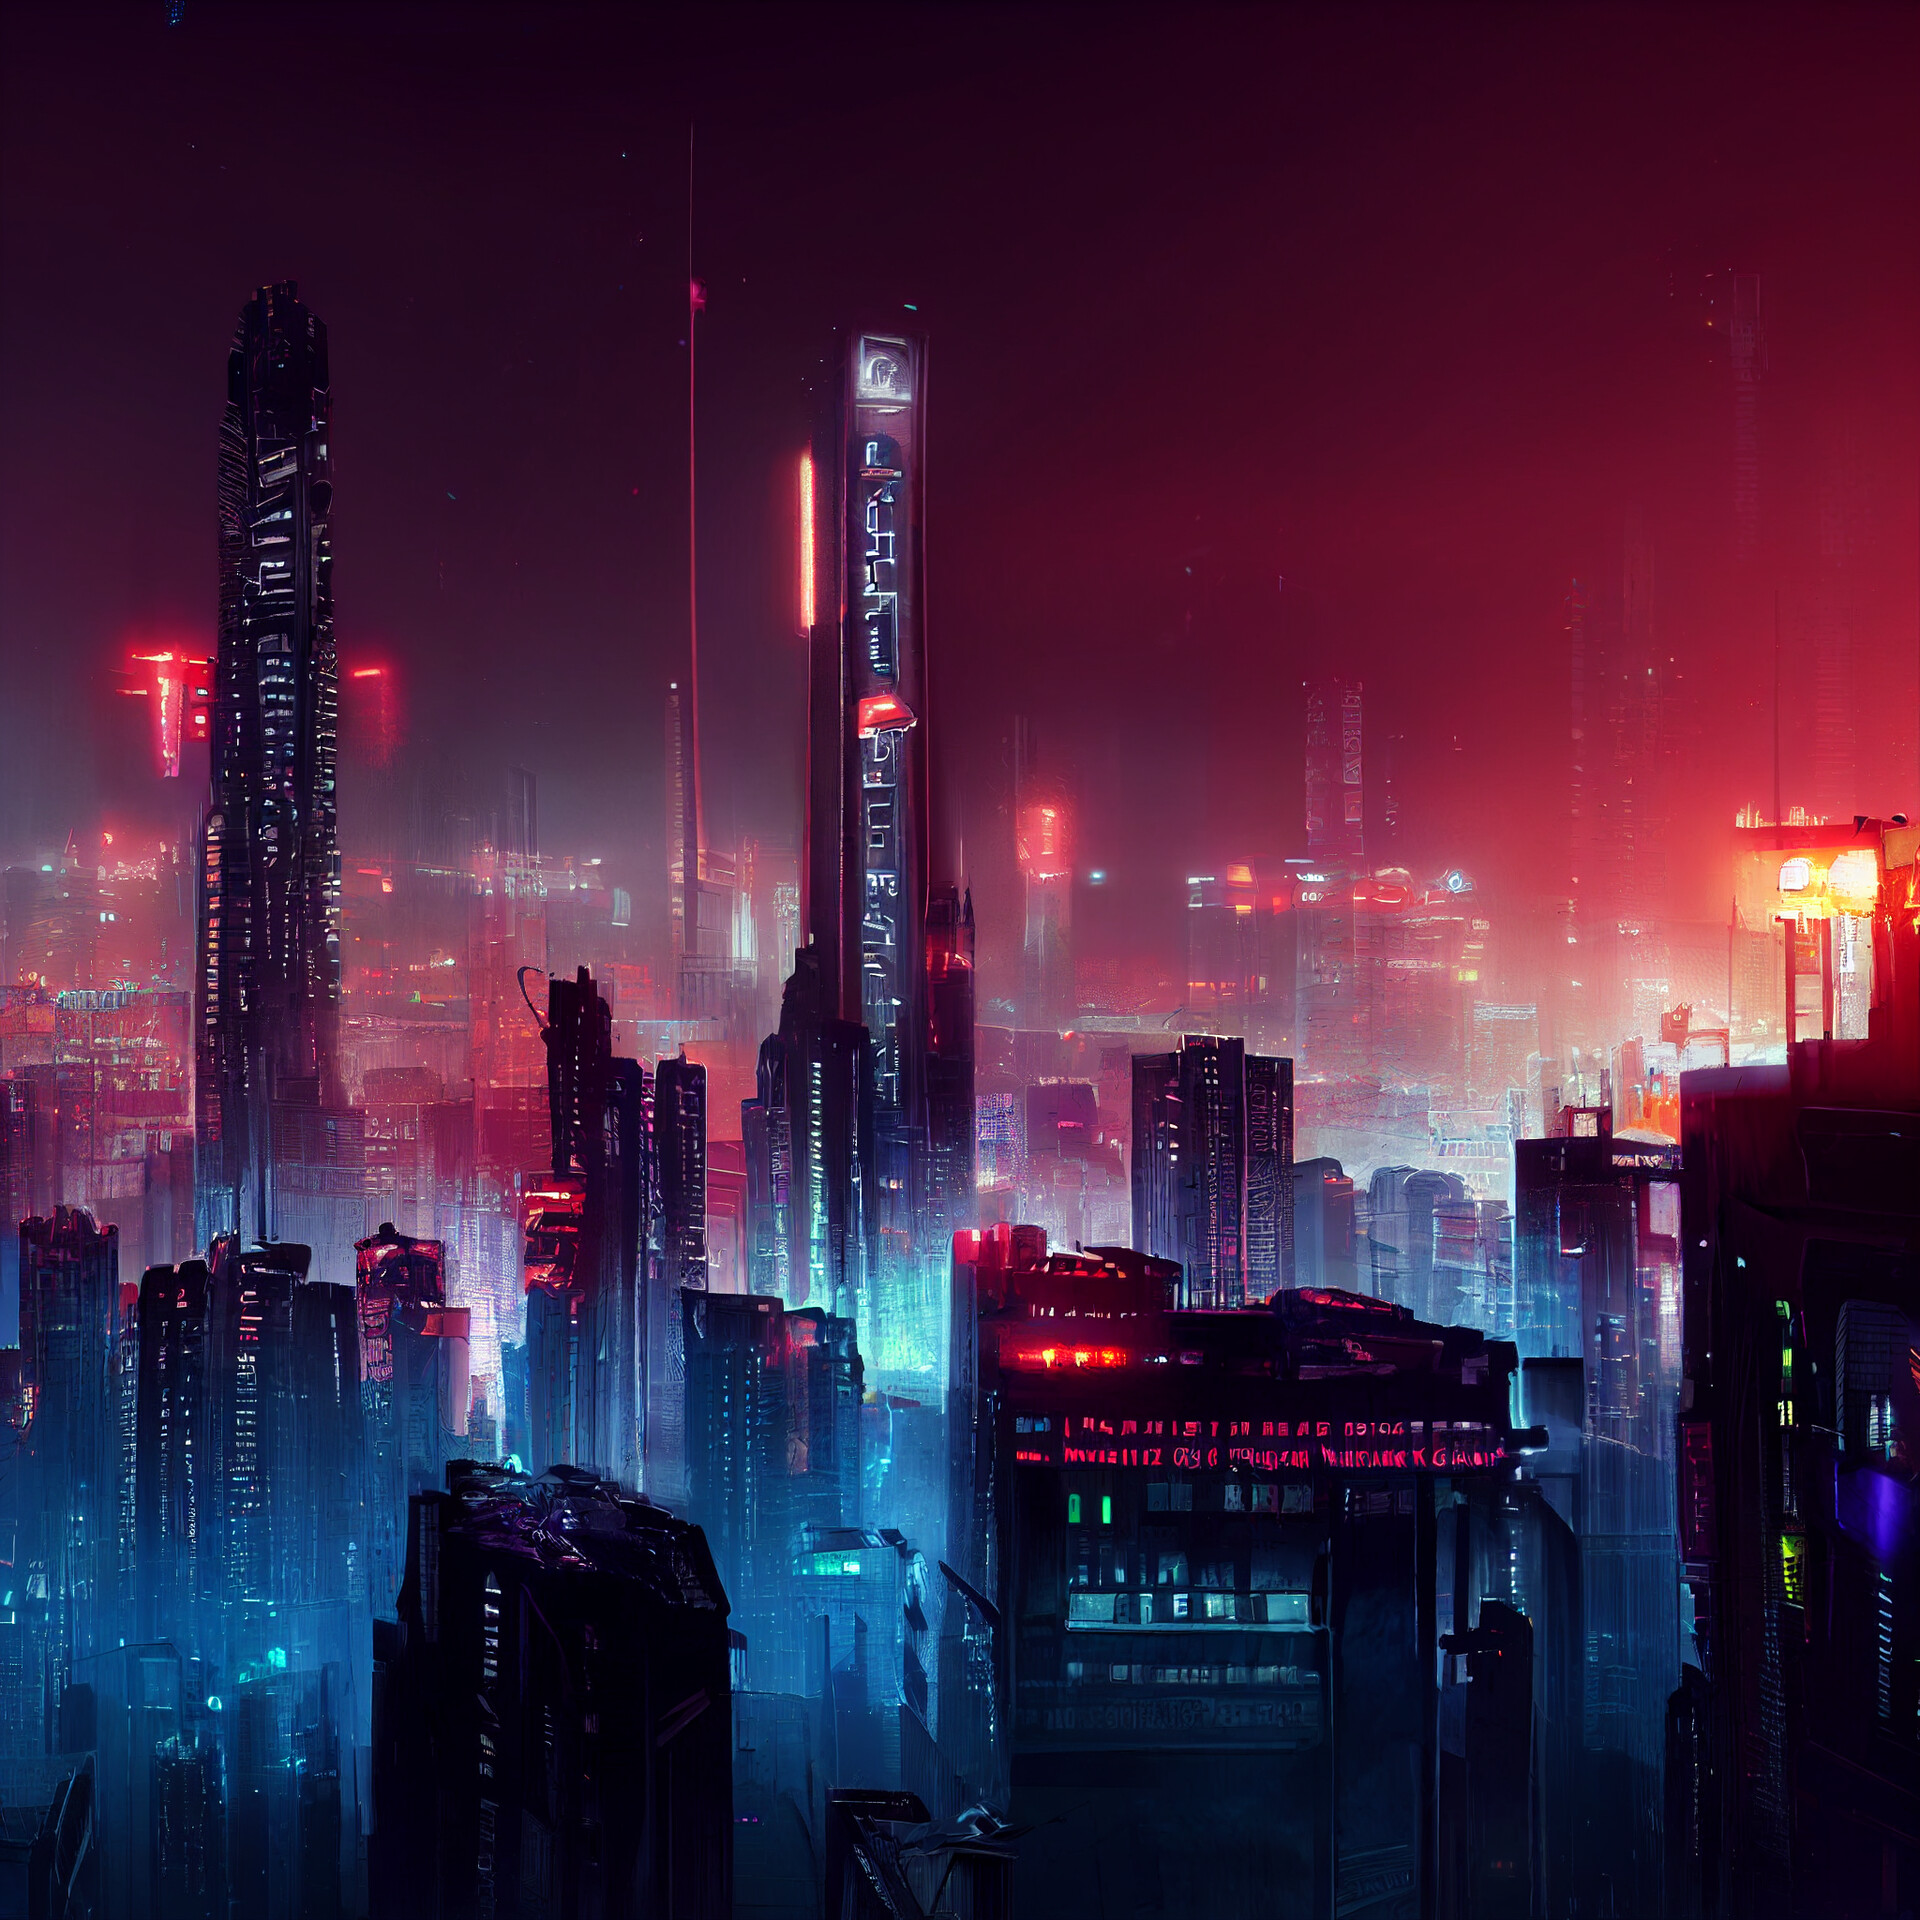 ArtStation - Cyberpunk city 2099 Concept Art